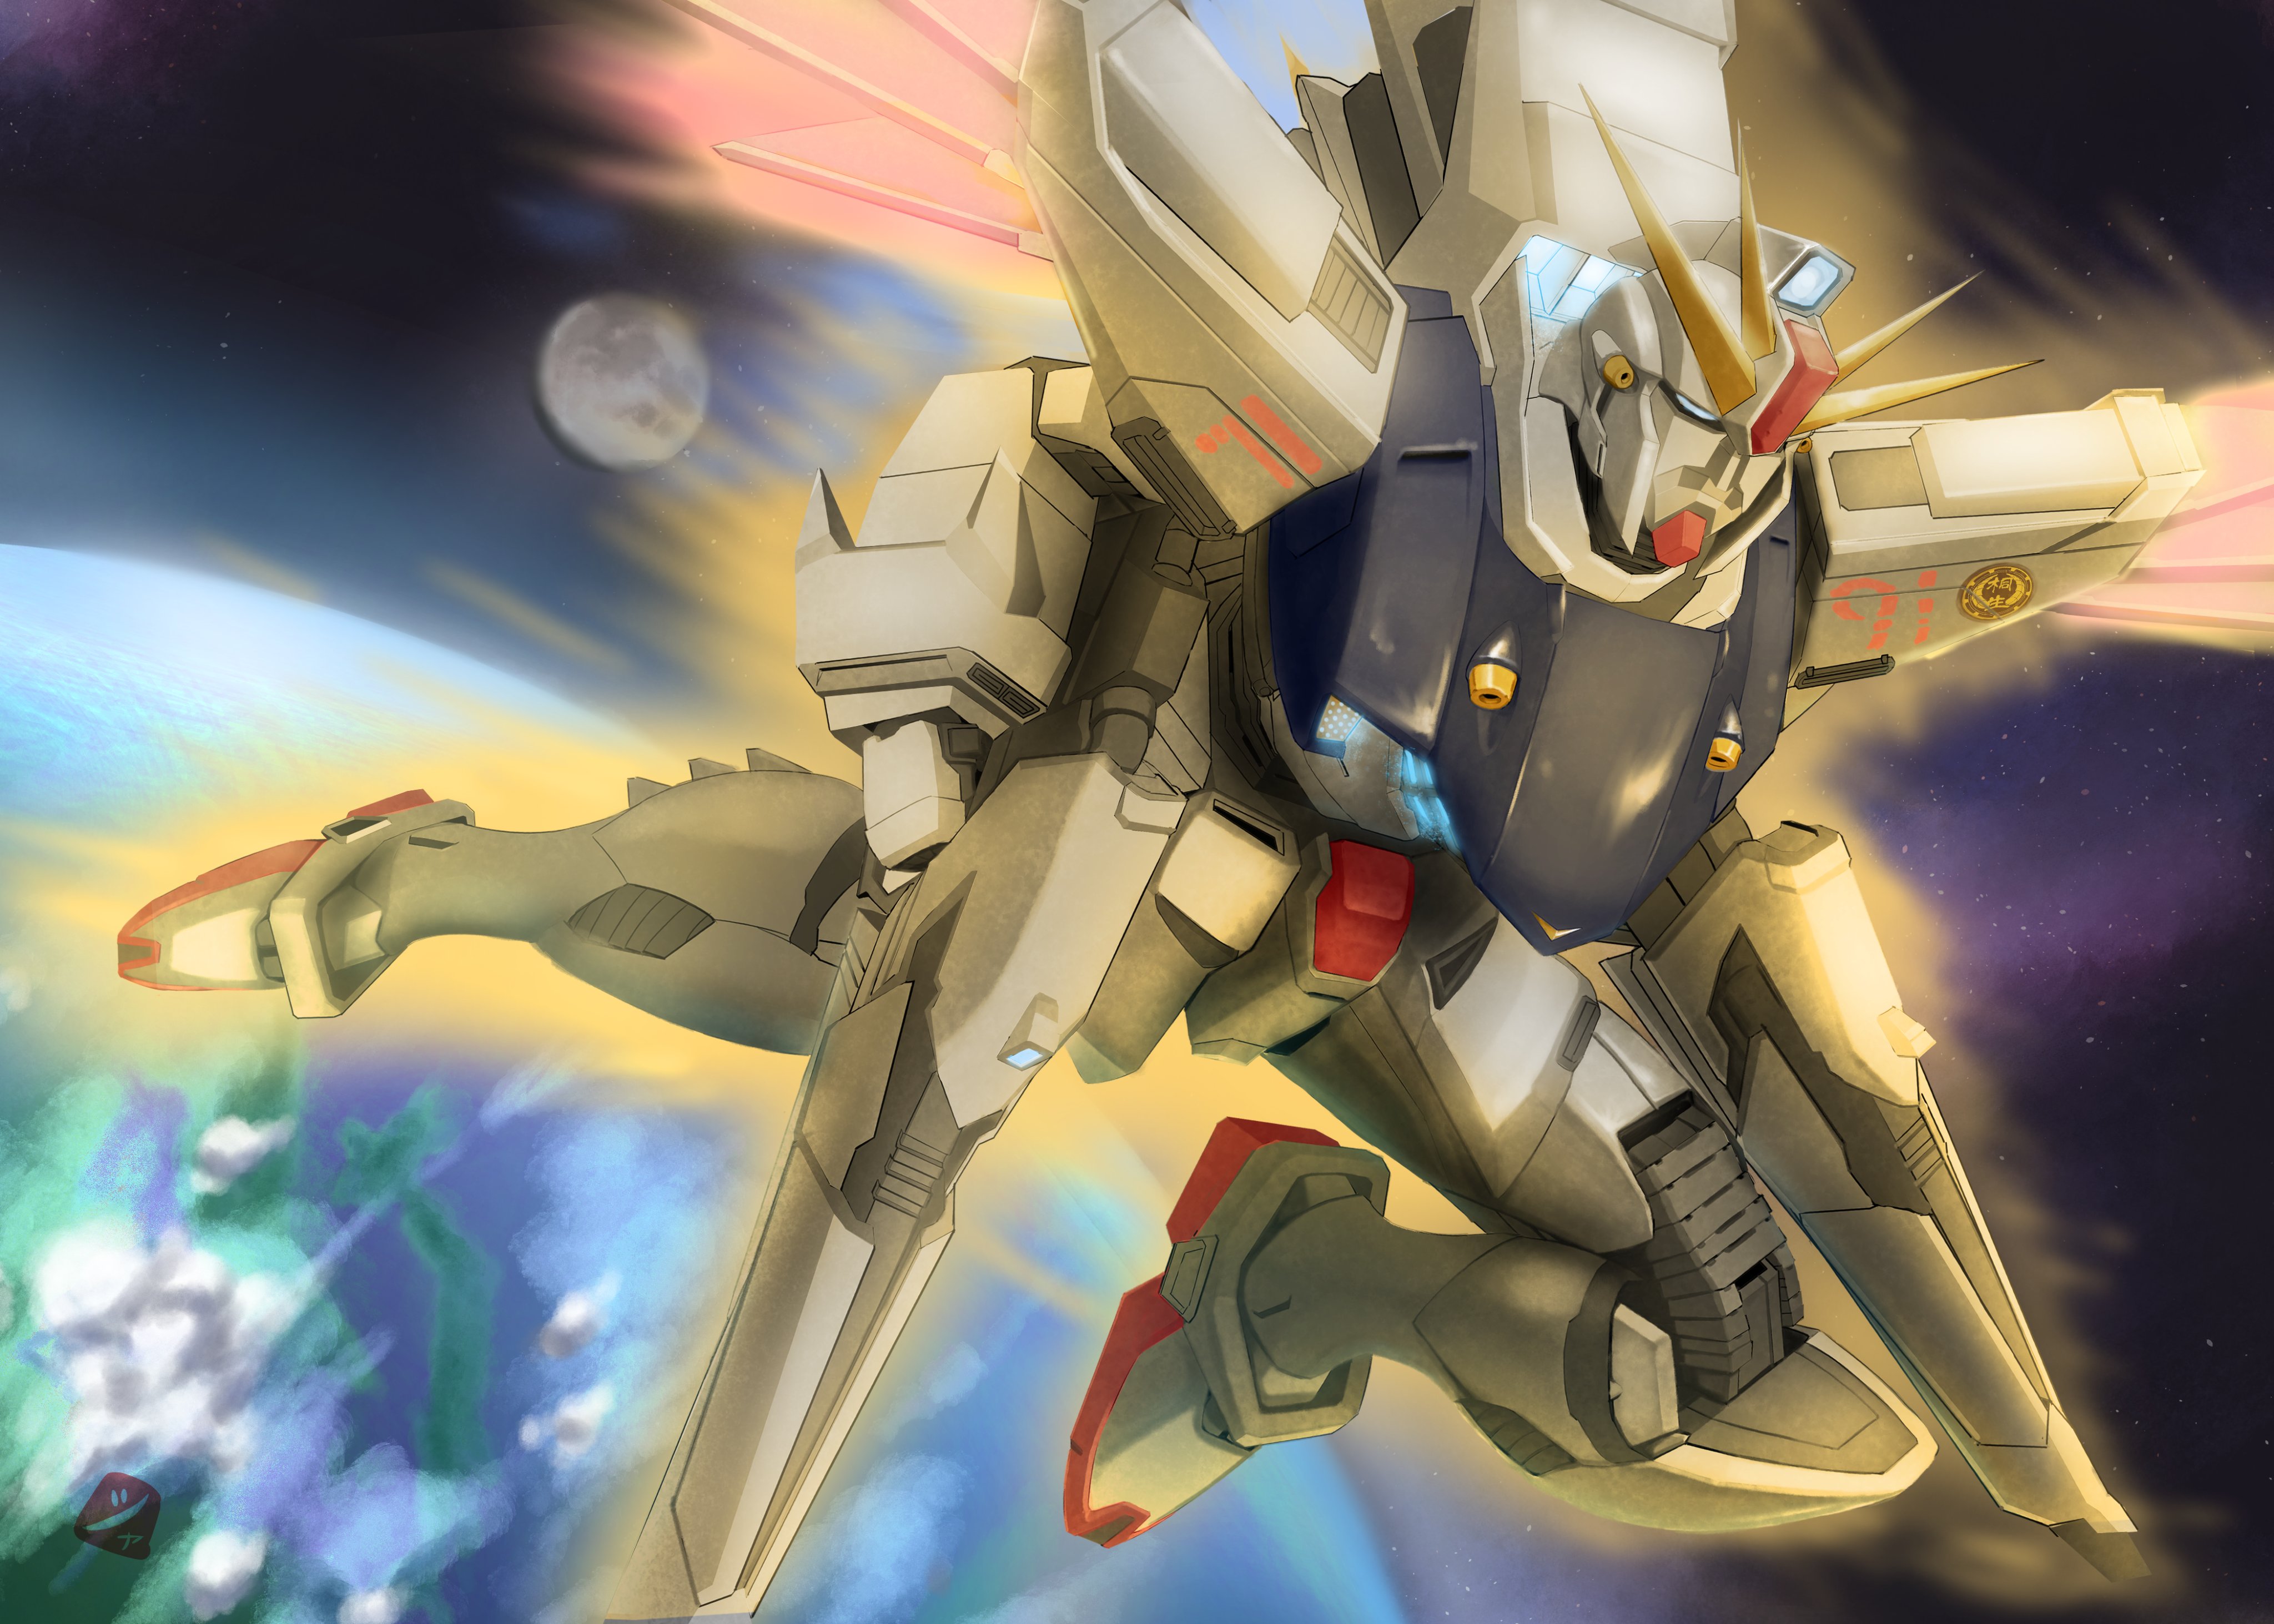 Anime 4096x2926 anime mechs Super Robot Taisen Mobile Suit Gundam F91 Gundam F91 Gundam artwork digital art fan art